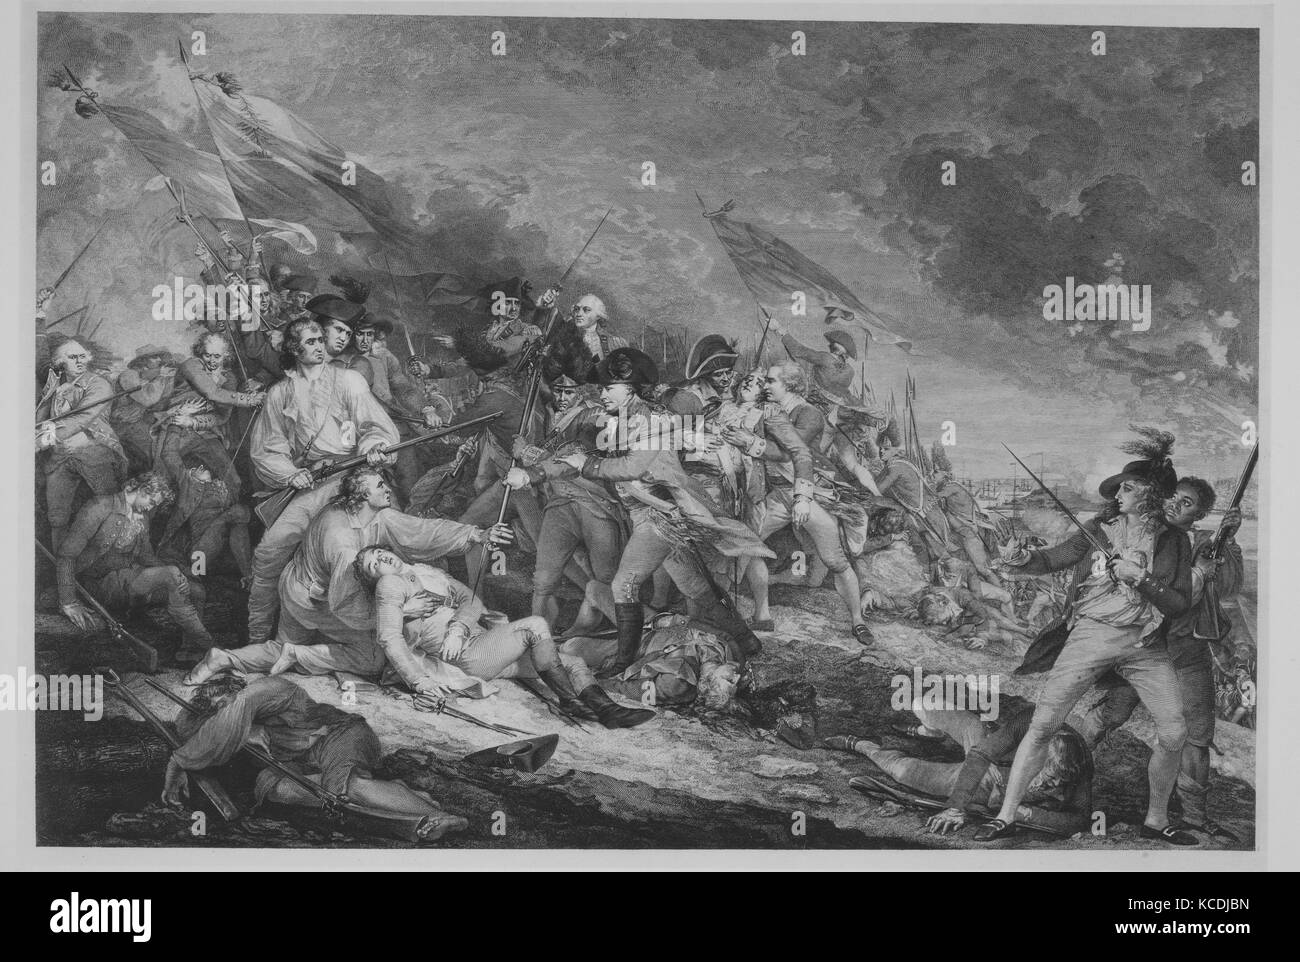 La battaglia di Bunker Hill (17 giugno 1775), Johann Gottardo Muller, ca. 1798 Foto Stock